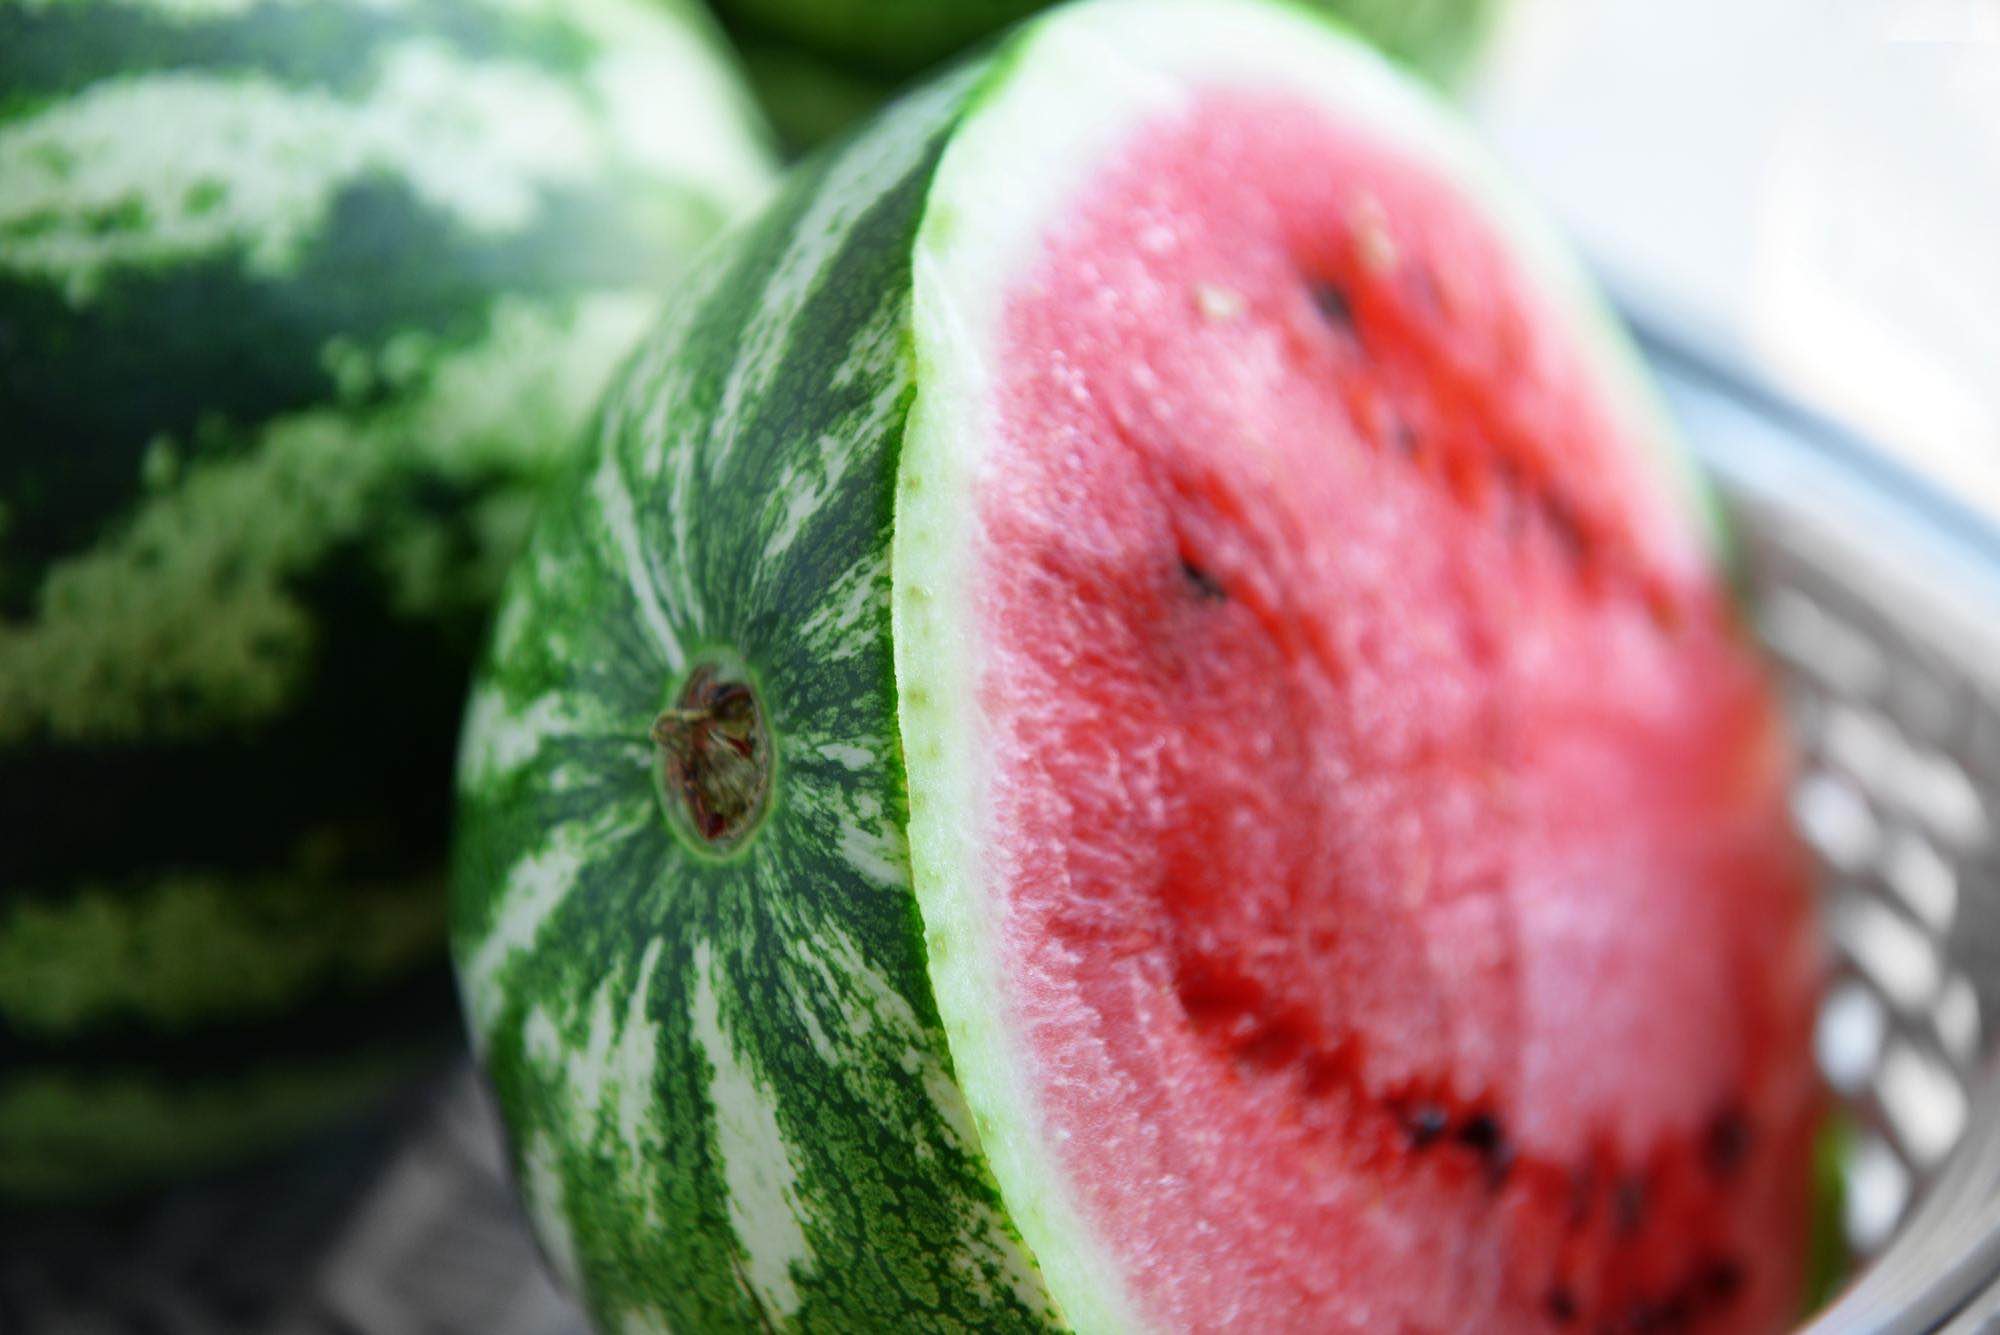 فاكهة البطيخ تحقق اكتفاءً ذاتياً في المملكة العربية السعودية